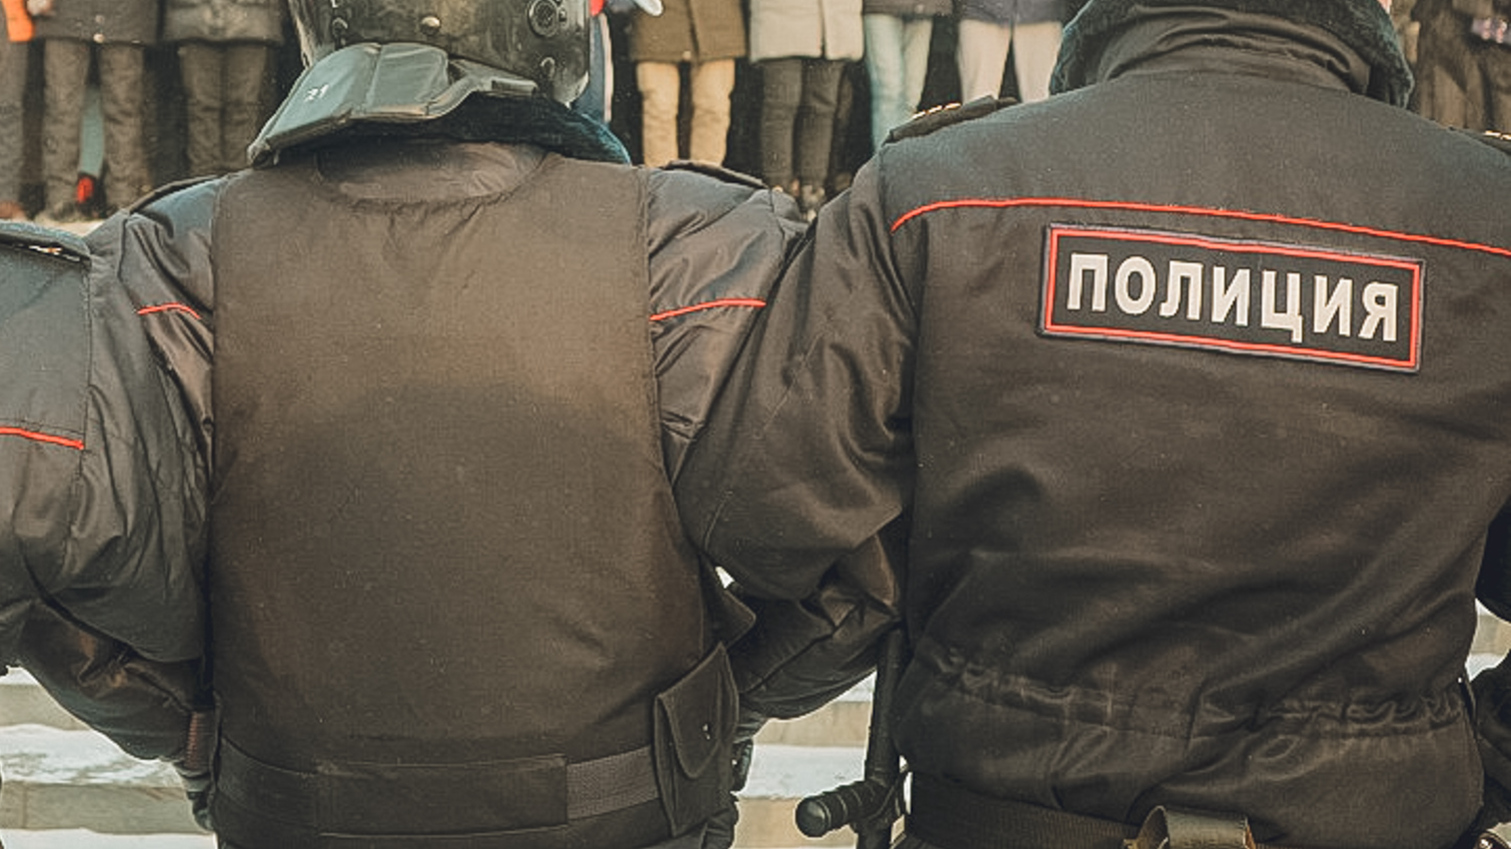 Полицейских не стали наказывать за незаконный арест музыканта в Ставрополе